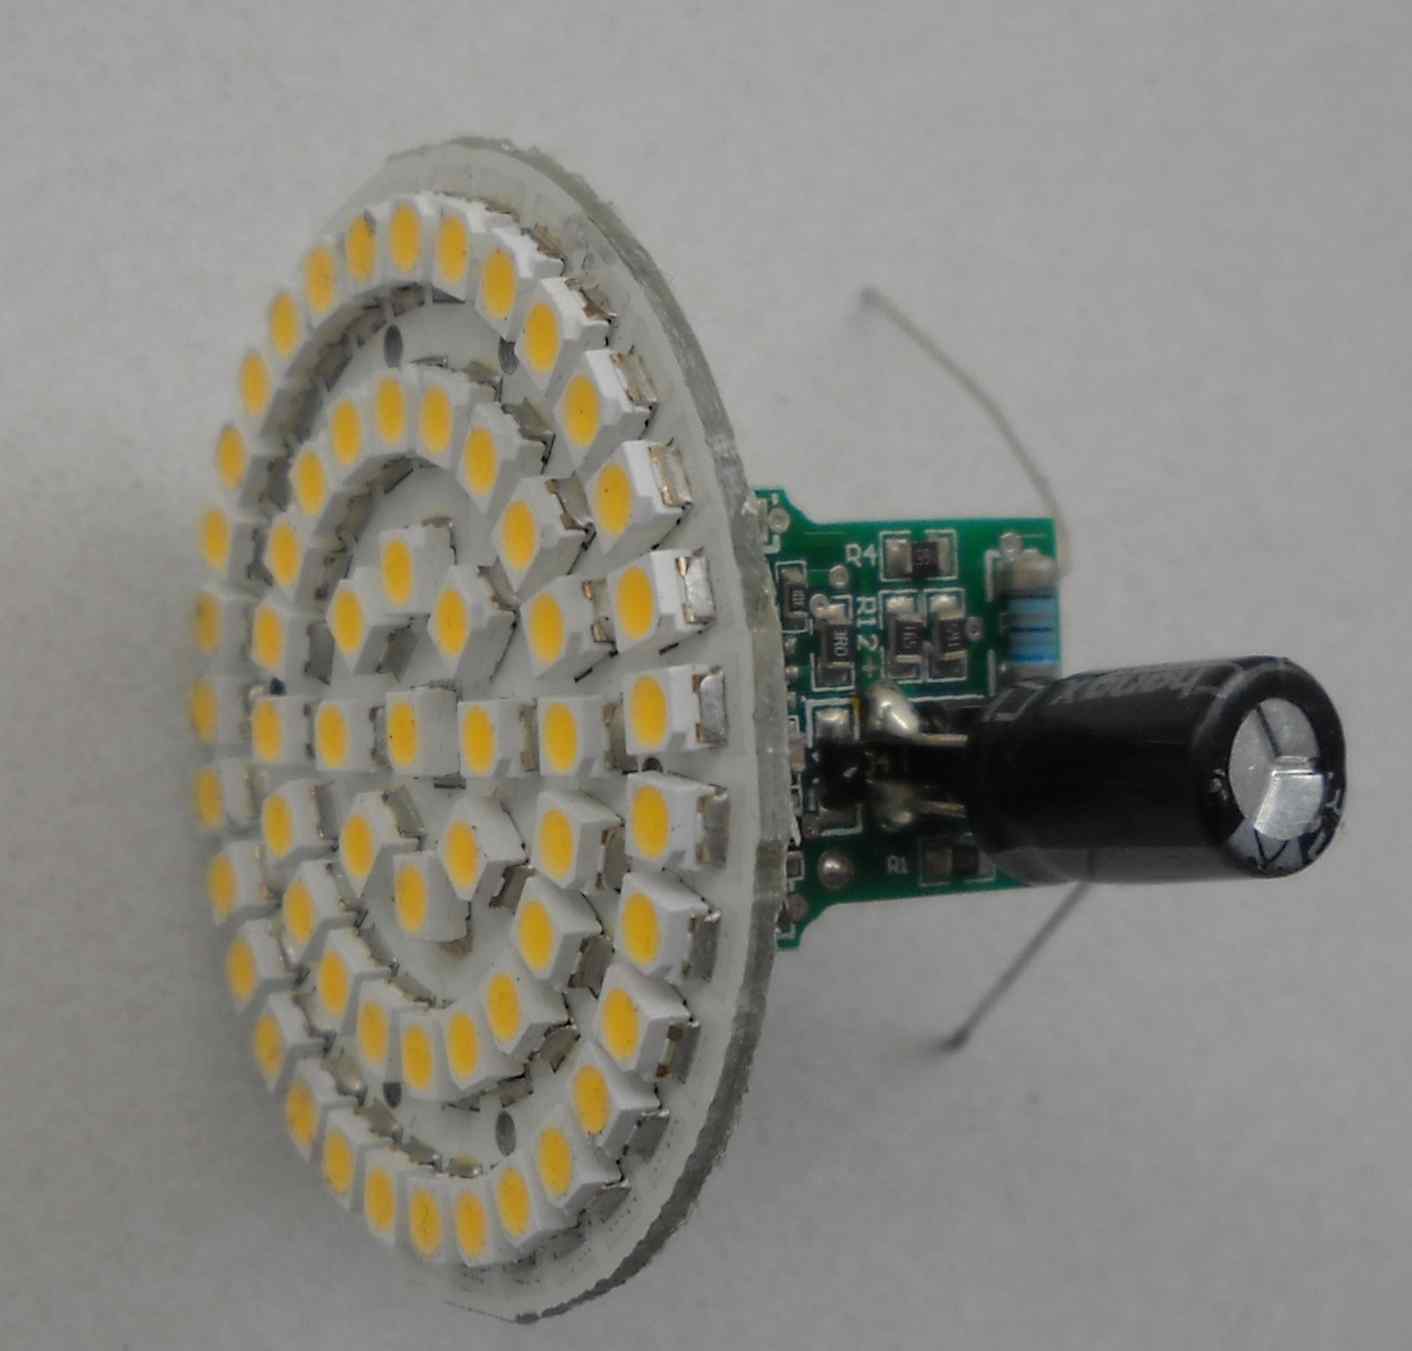 LED Lampe blinkt nur noch (230V) - Mikrocontroller.net